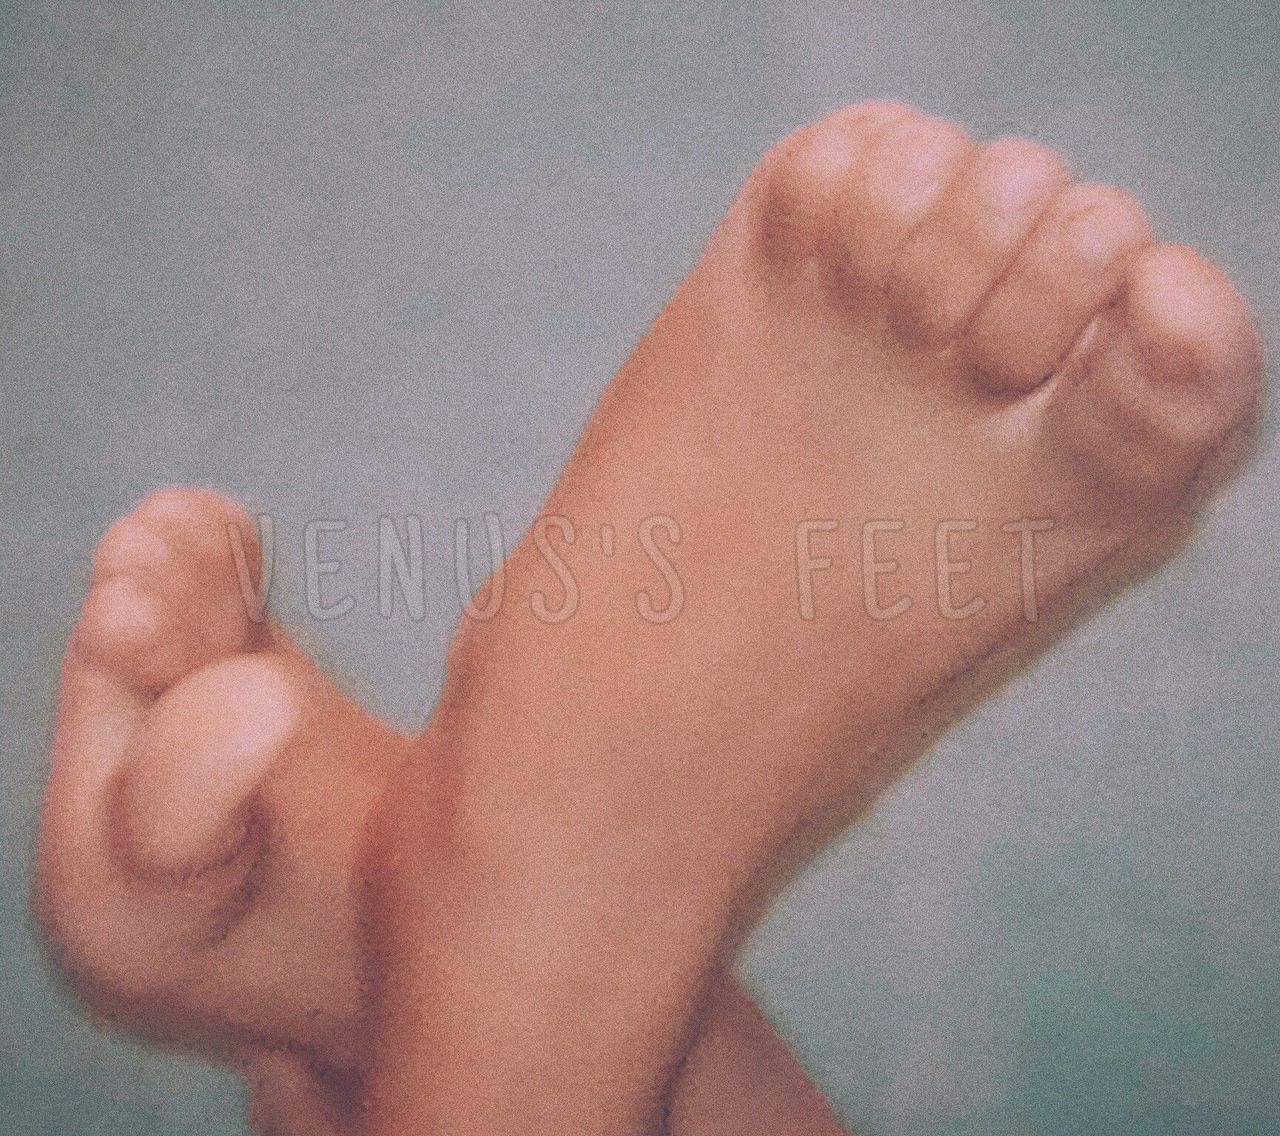 Venus S Feet Debut